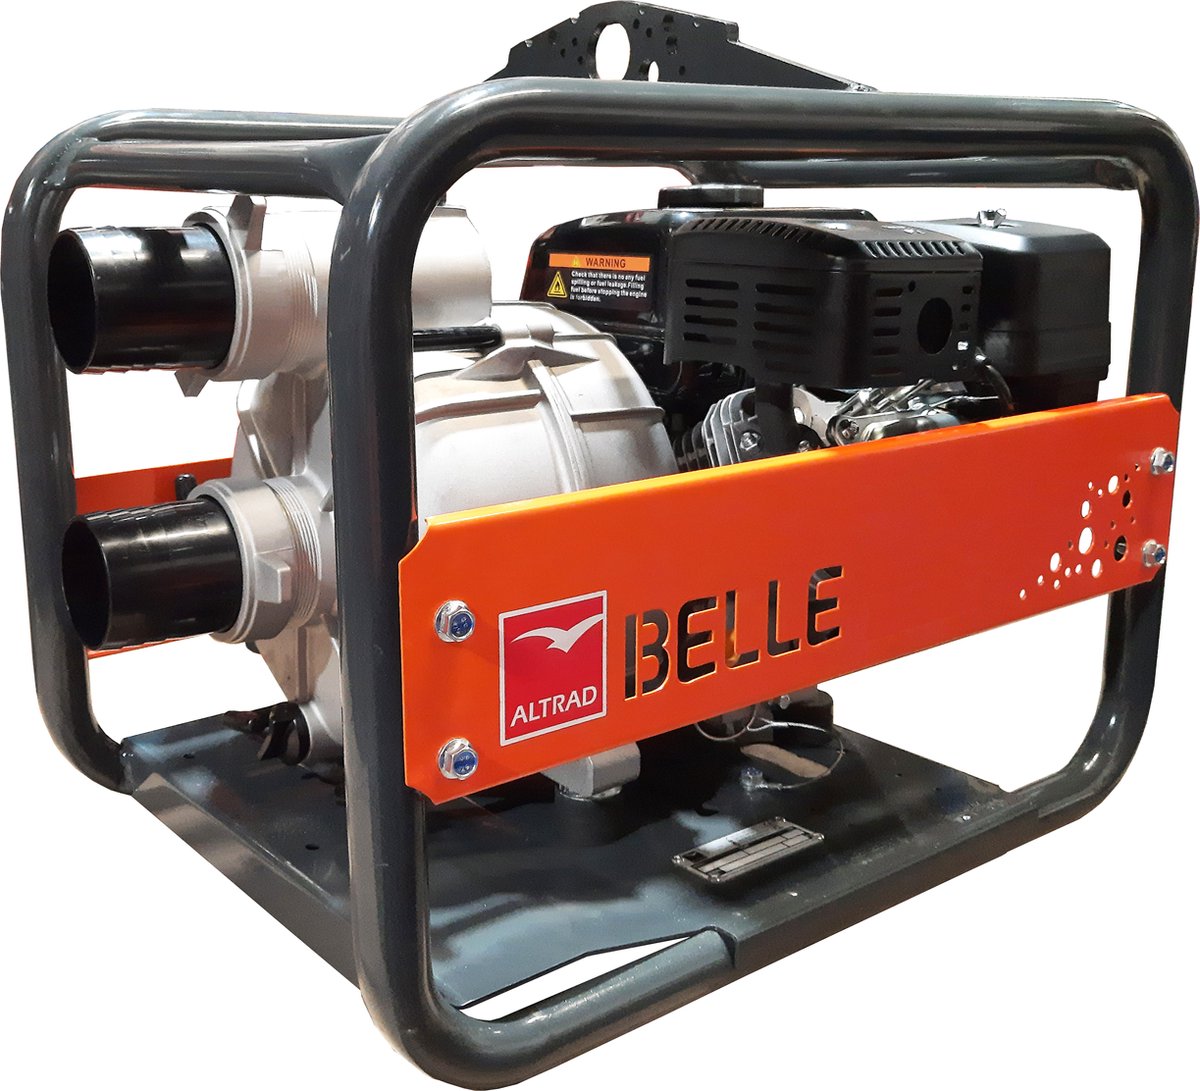 Belle WPX 3/30 vuilwaterpomp compleet set - Loncin/Belle G200F benzinemotor